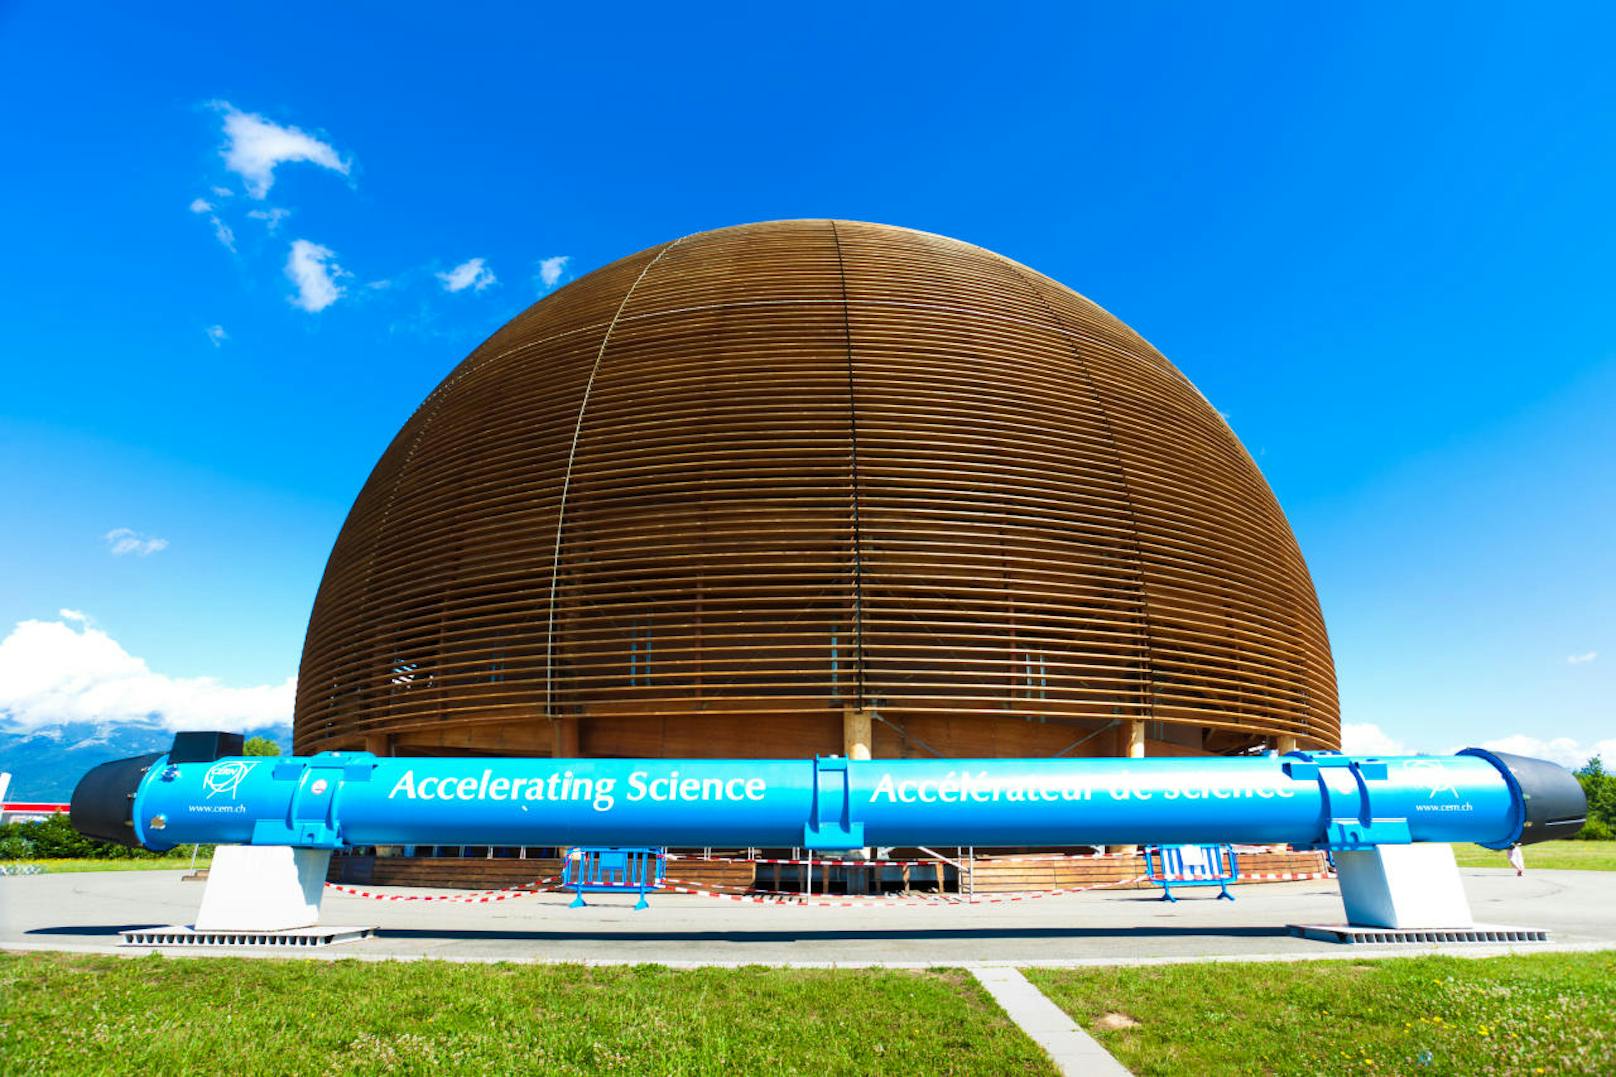 Beginnen wir gleich in <b>der Schweiz</b>: Das Cern, eine Abkürzung für Europäisches Kernforschungsinstitut, ist weltweit bekannt und ein Hotspot für Physik-Interessierte. Teilchenphysik, neue Erkenntnisse in der Wissenschaft und Spitzentechnologie sind hier allgegenwärtig.